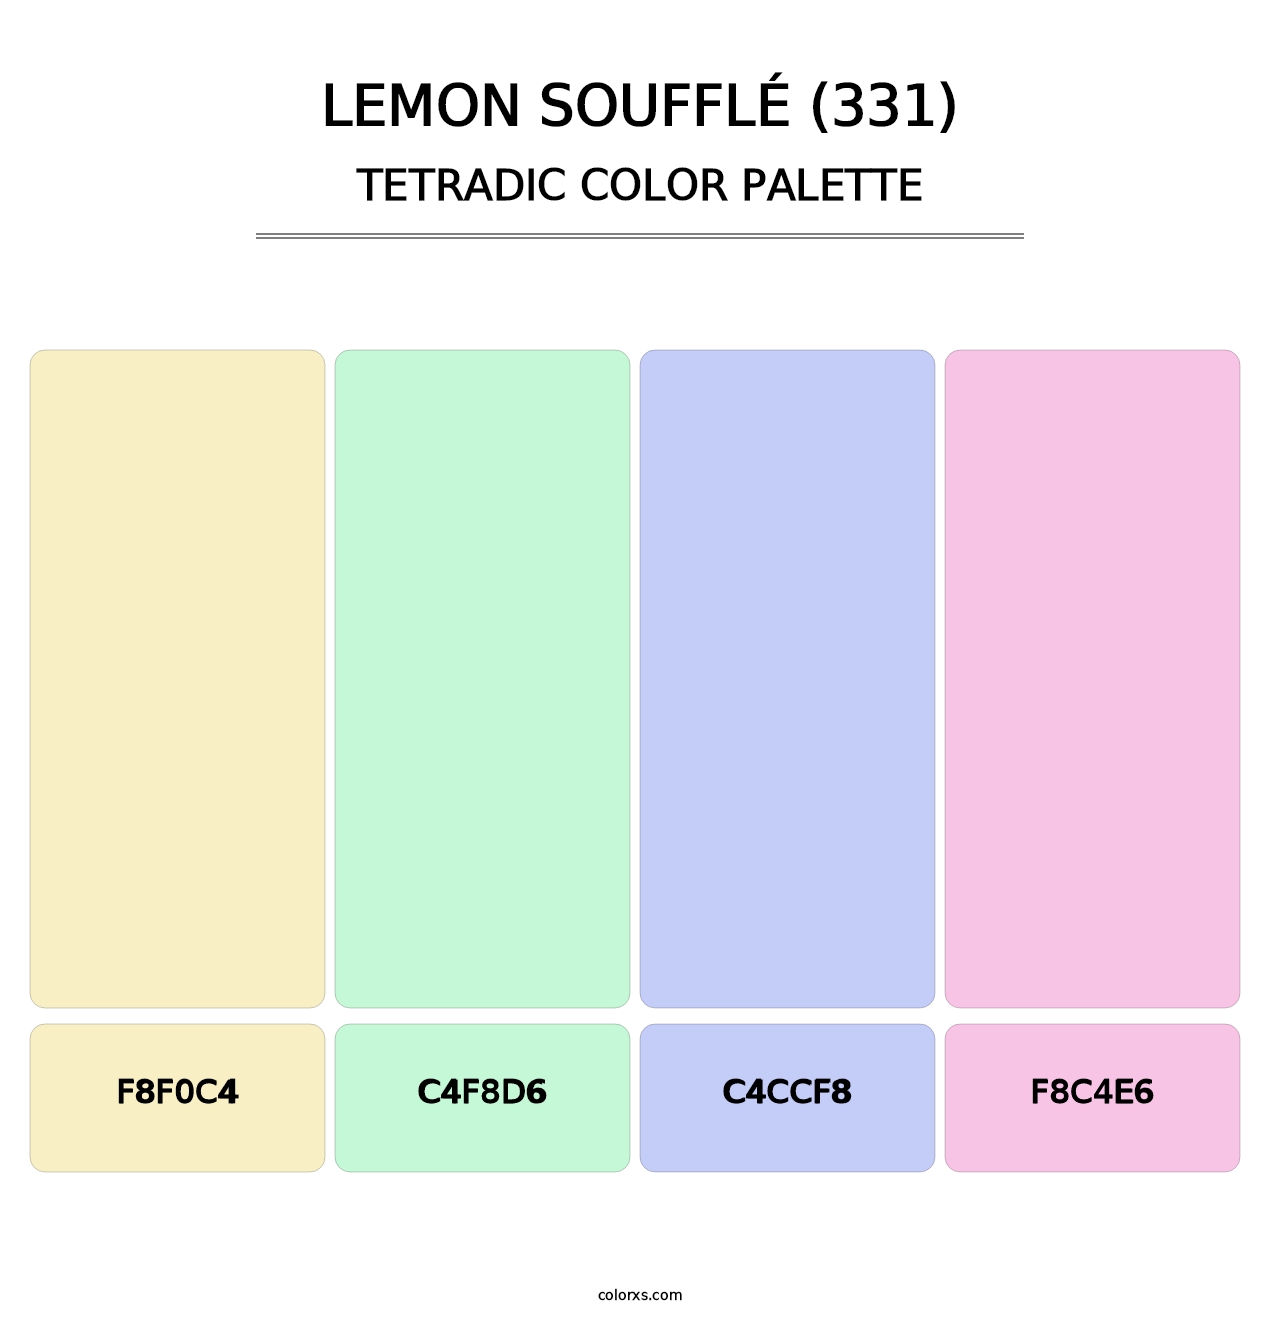 Lemon Soufflé (331) - Tetradic Color Palette